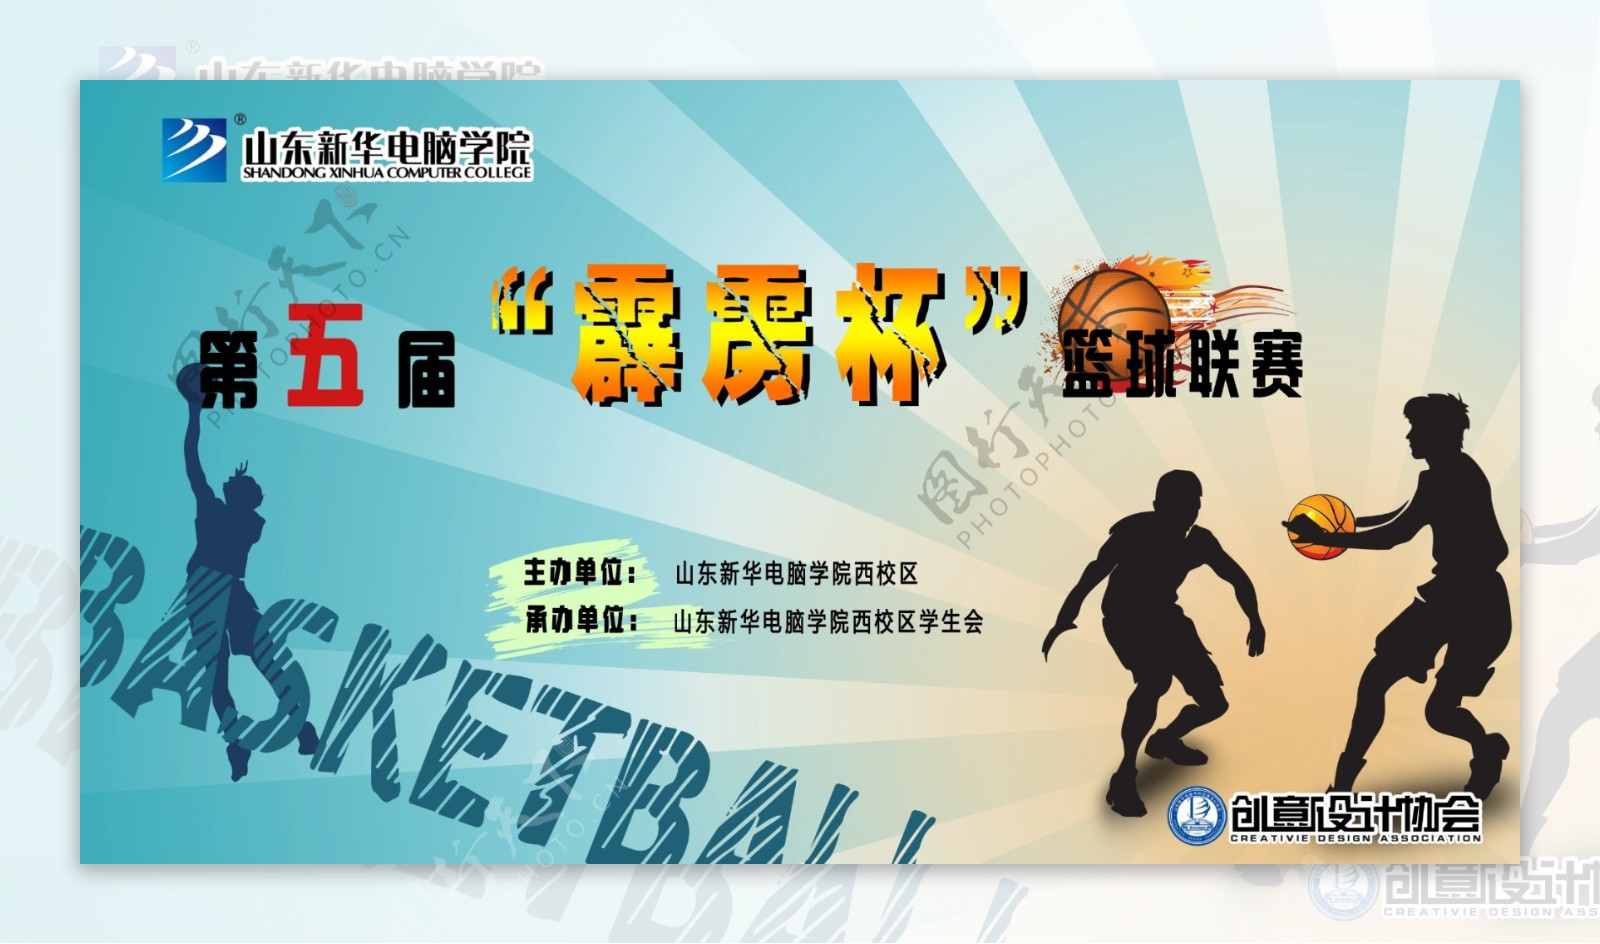 霹雳杯篮球联赛广告PSD素材